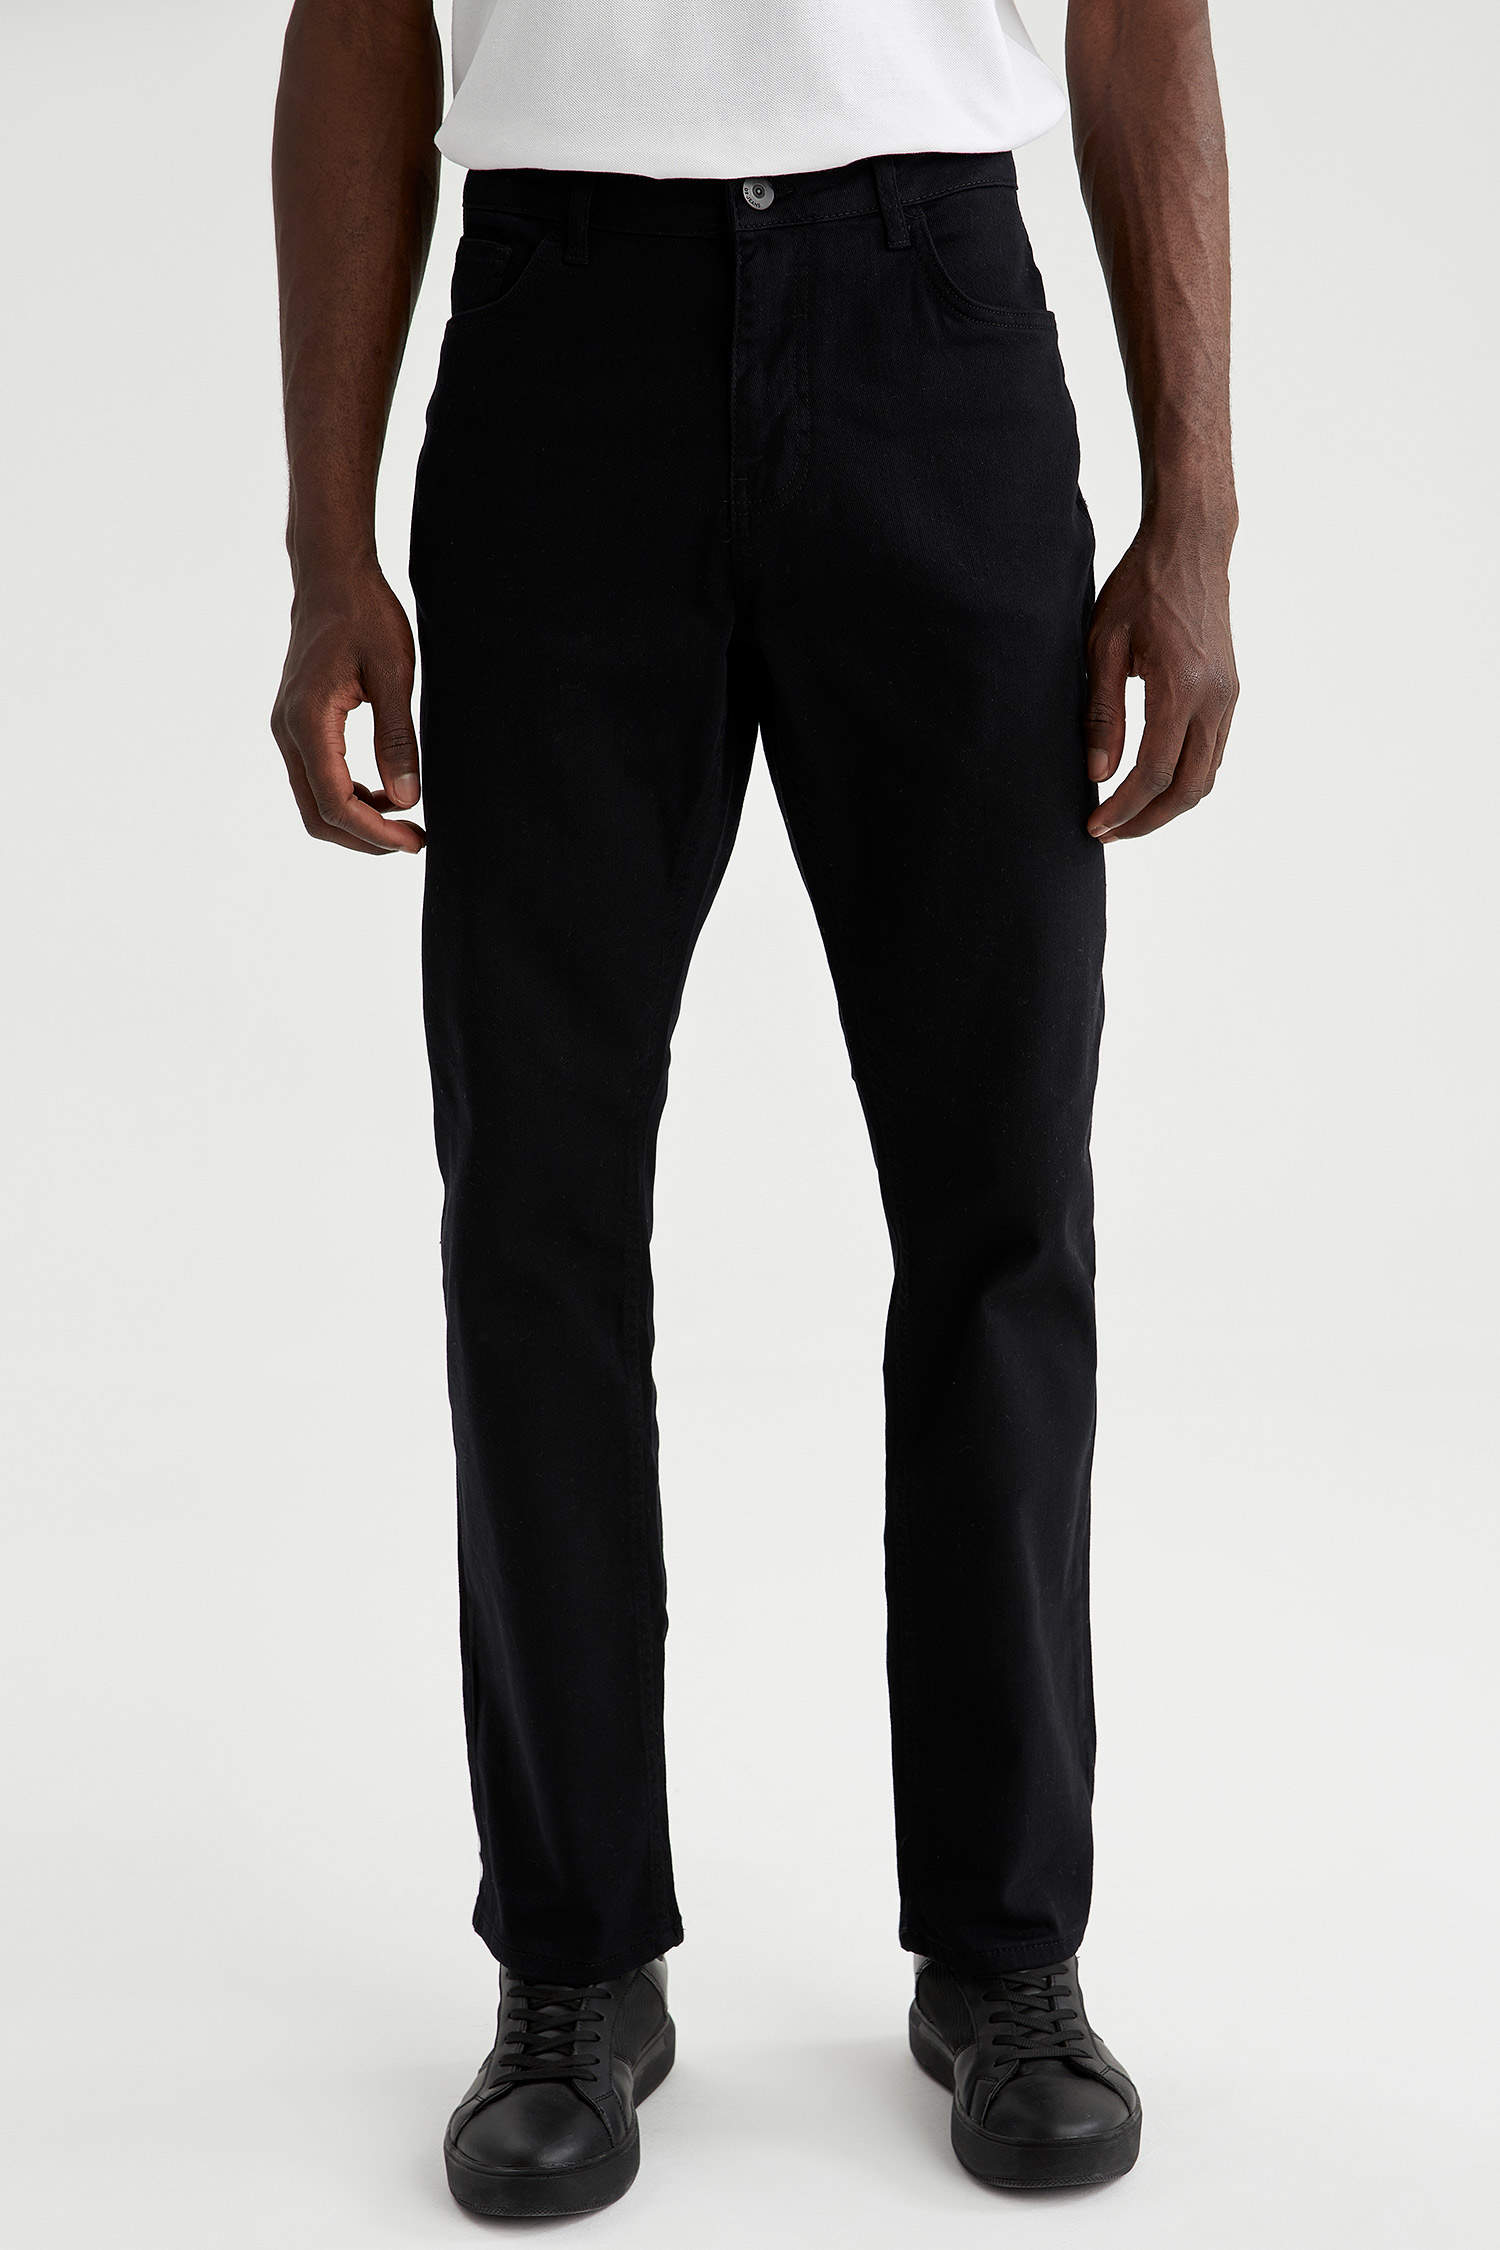 Defacto Diago Comfort Fit Yüksek Bel Boru Paça Siyah Jean Pantolon. 1